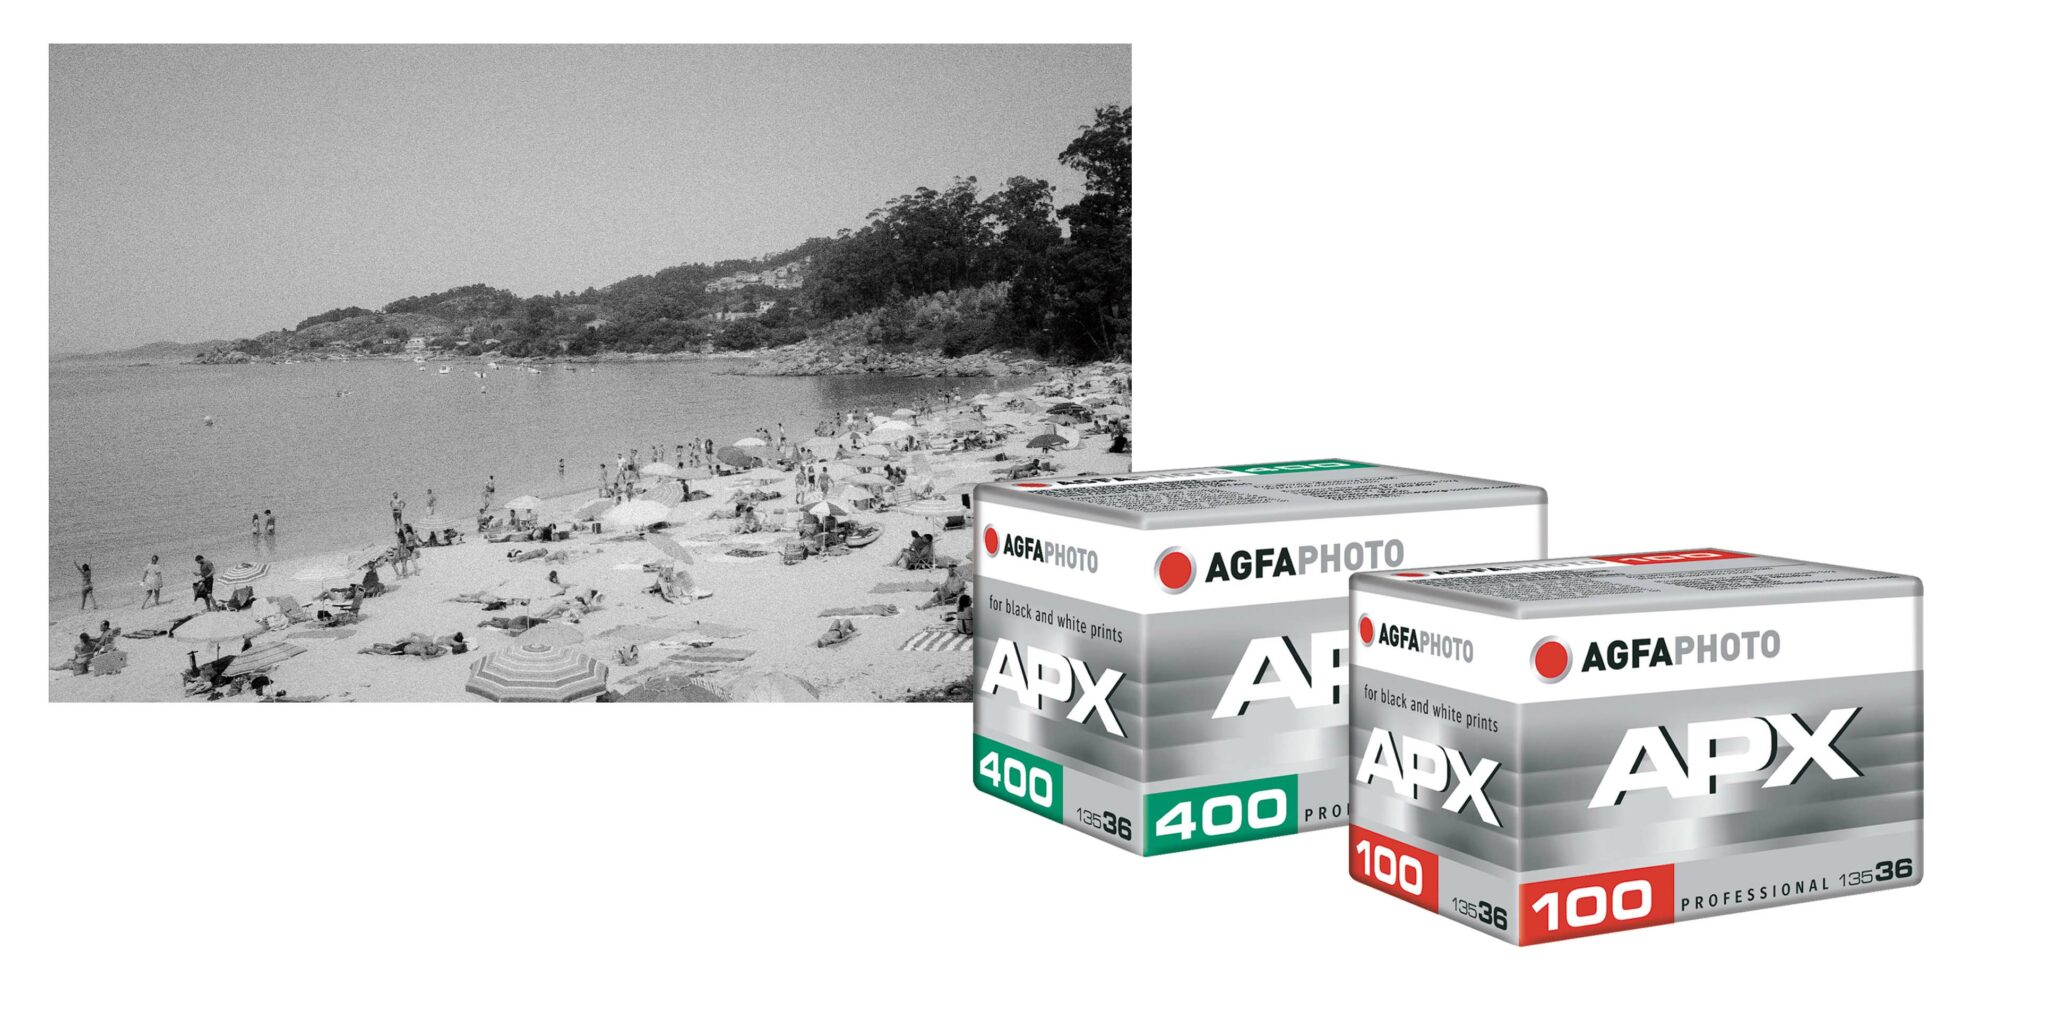 Robisa se convierte en el distribuidor oficial de la marca fotográfica  AgfaPhoto en España y Portugal. - ROBISA